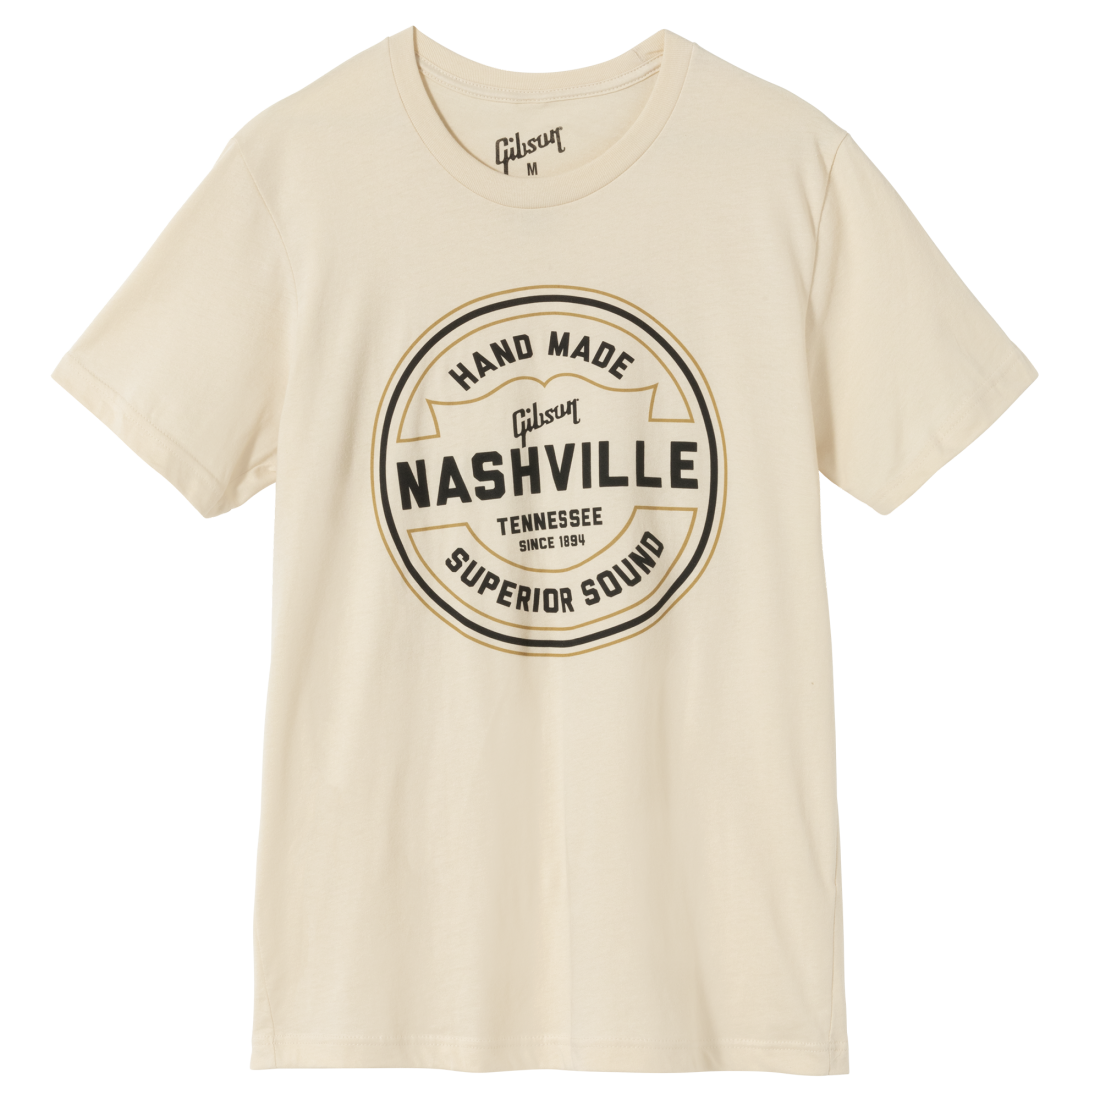 Handmade in Nashville Tee - XXXL